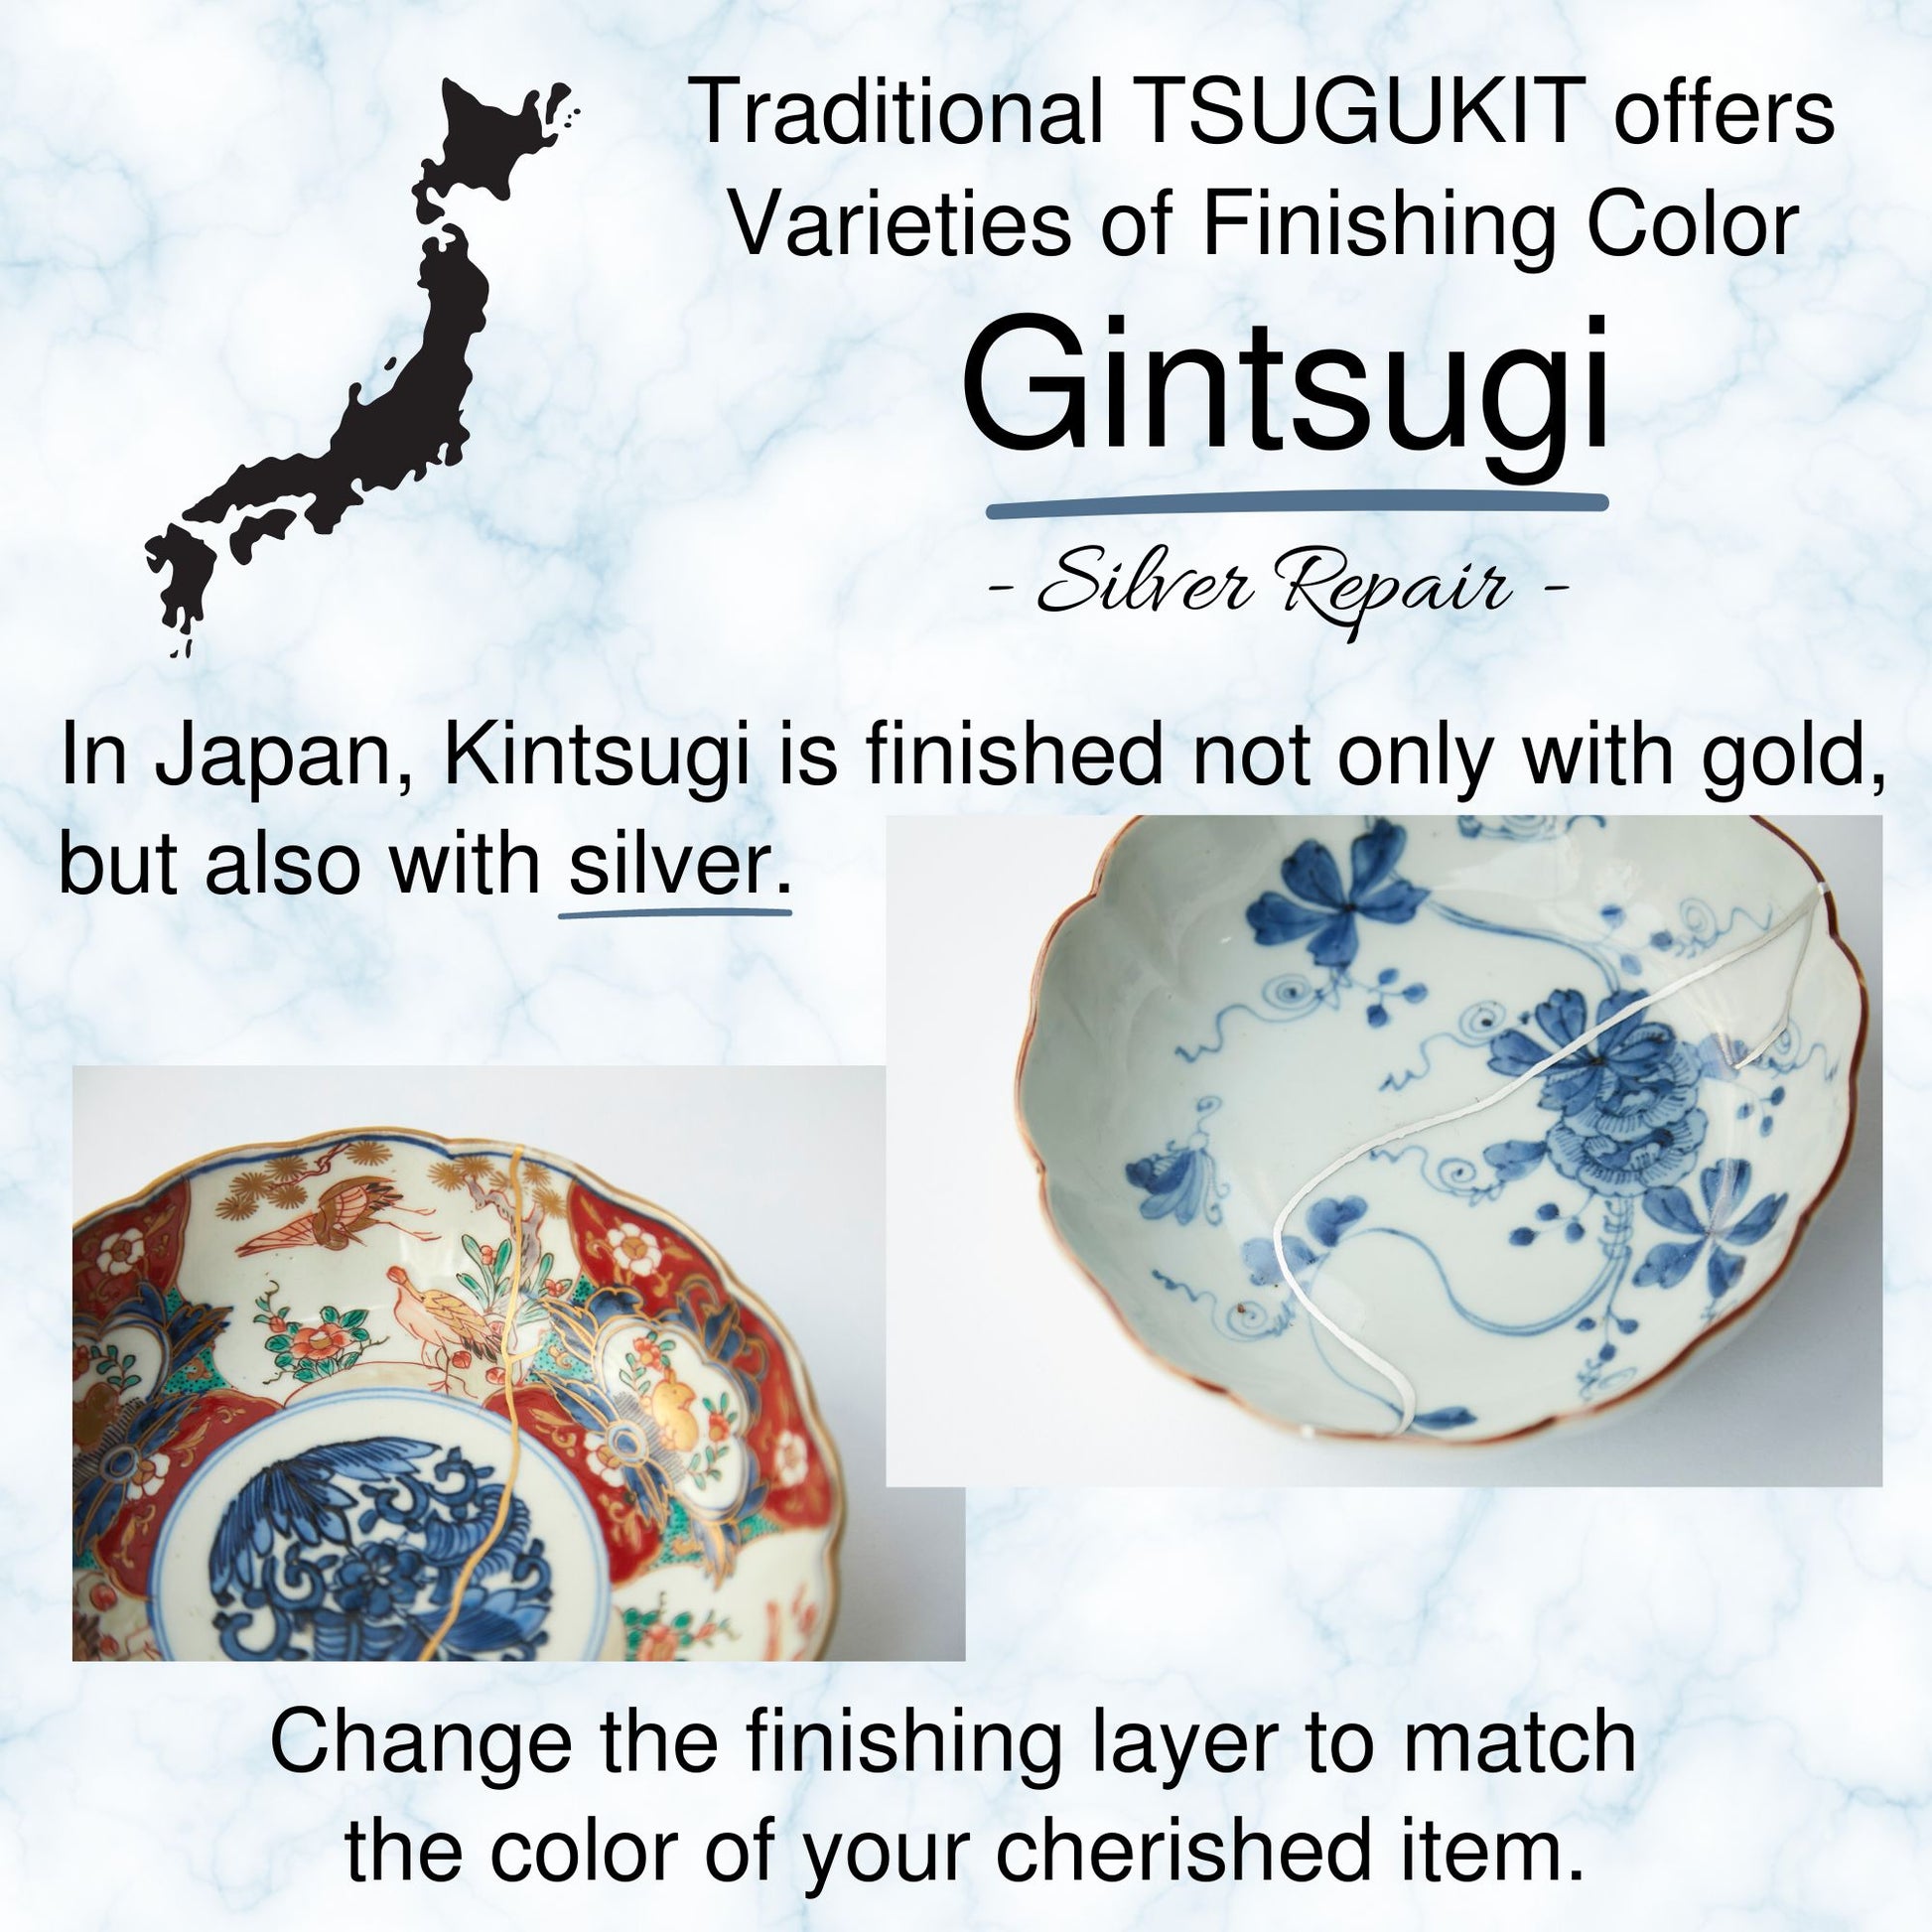 REAL Kintsugi repair kit Gold powder English manual Japan Food-safe